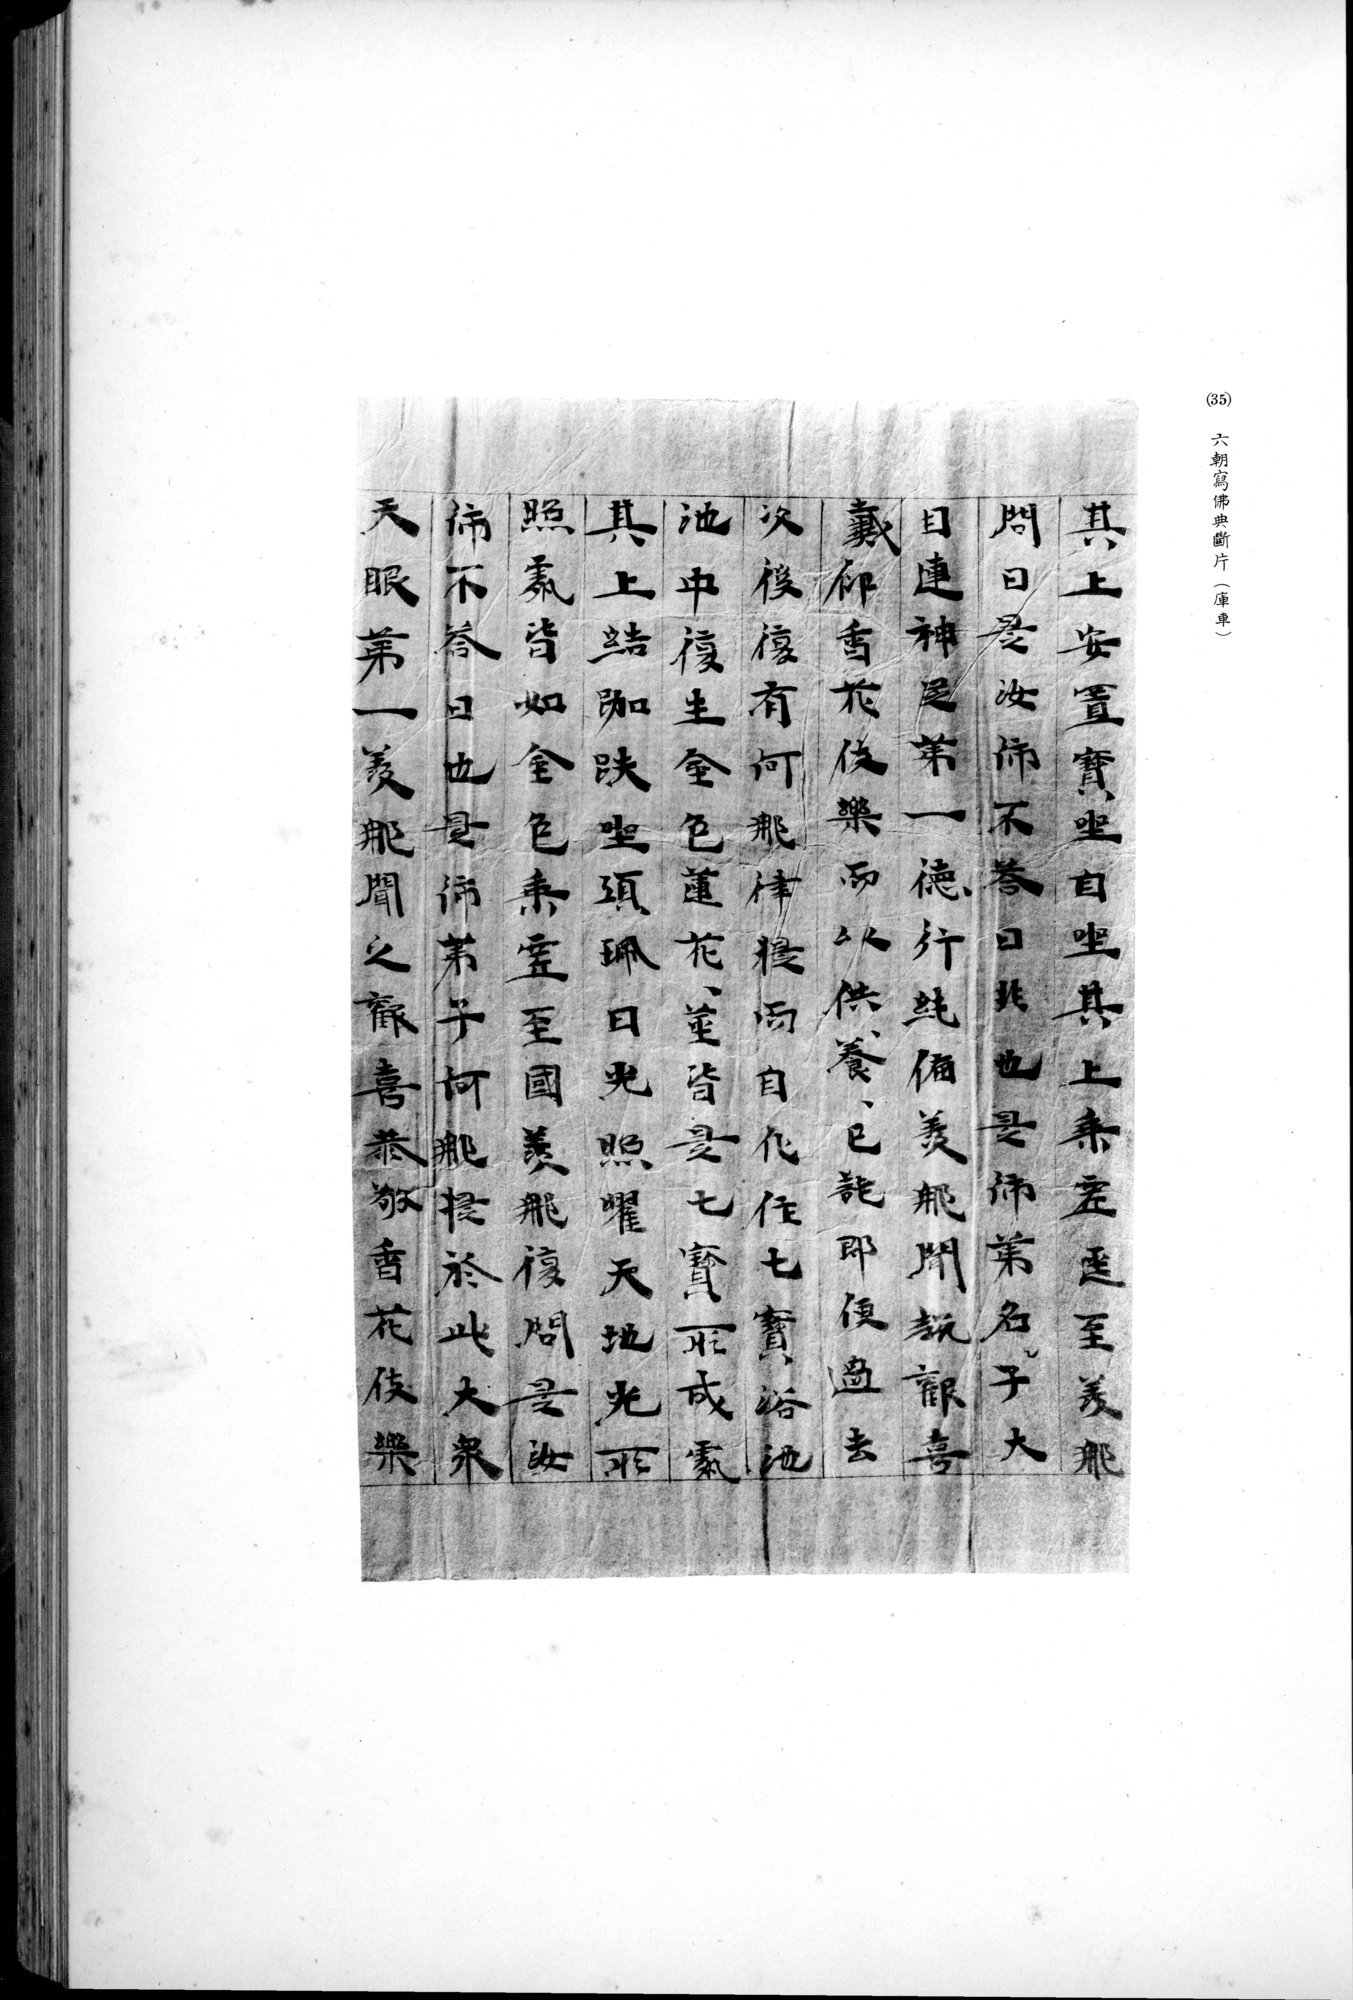 西域考古図譜 : vol.2 / 85 ページ（白黒高解像度画像）